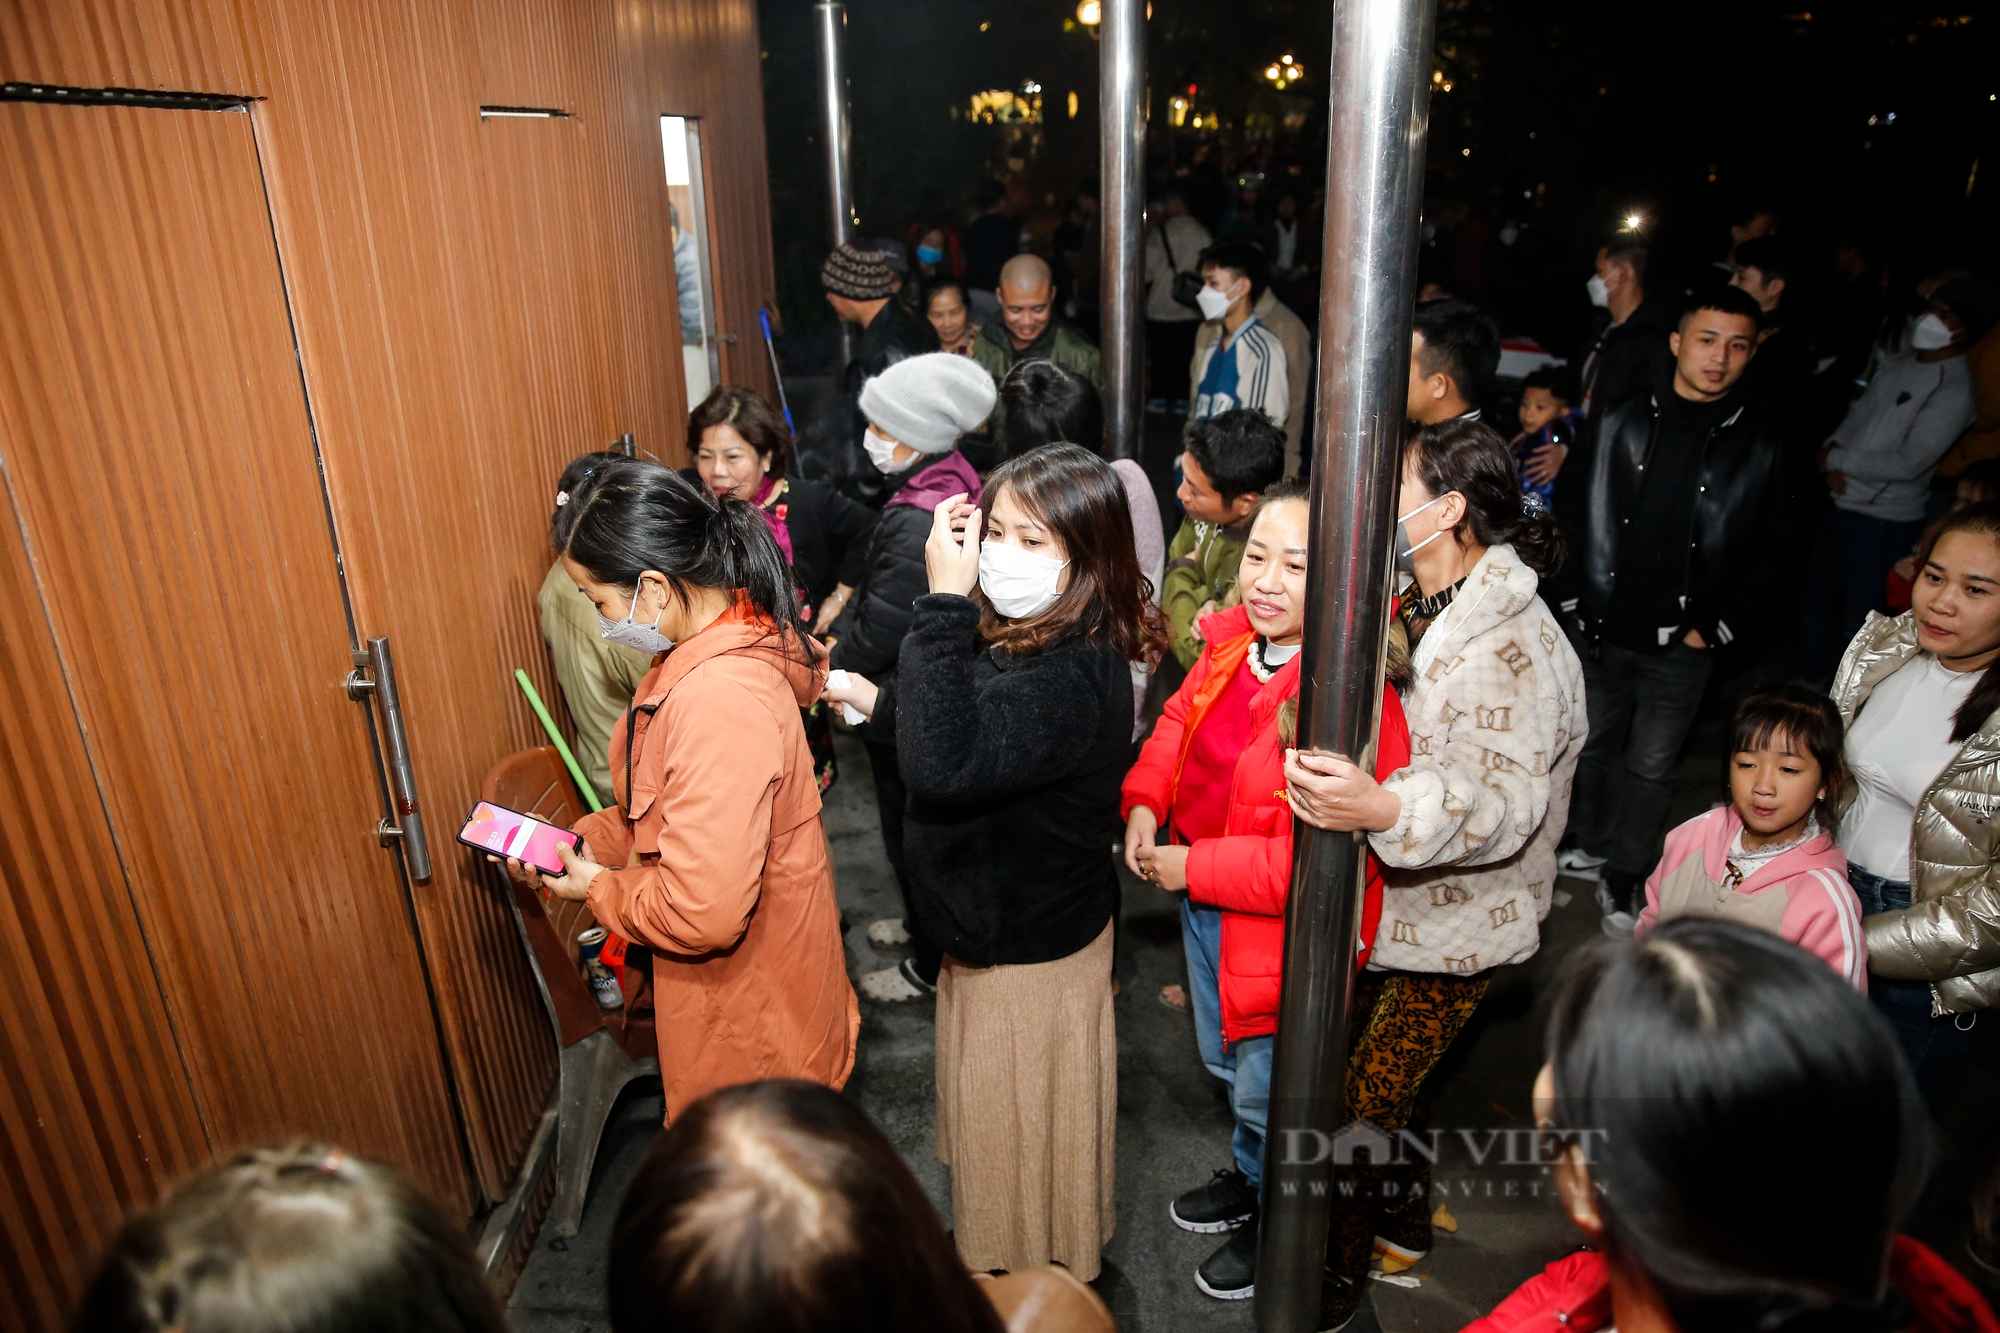 Xếp hàng chờ cả tiếng để tới lượt đi vệ sinh trong đêm Noel tại Hà Nội - Ảnh 4.